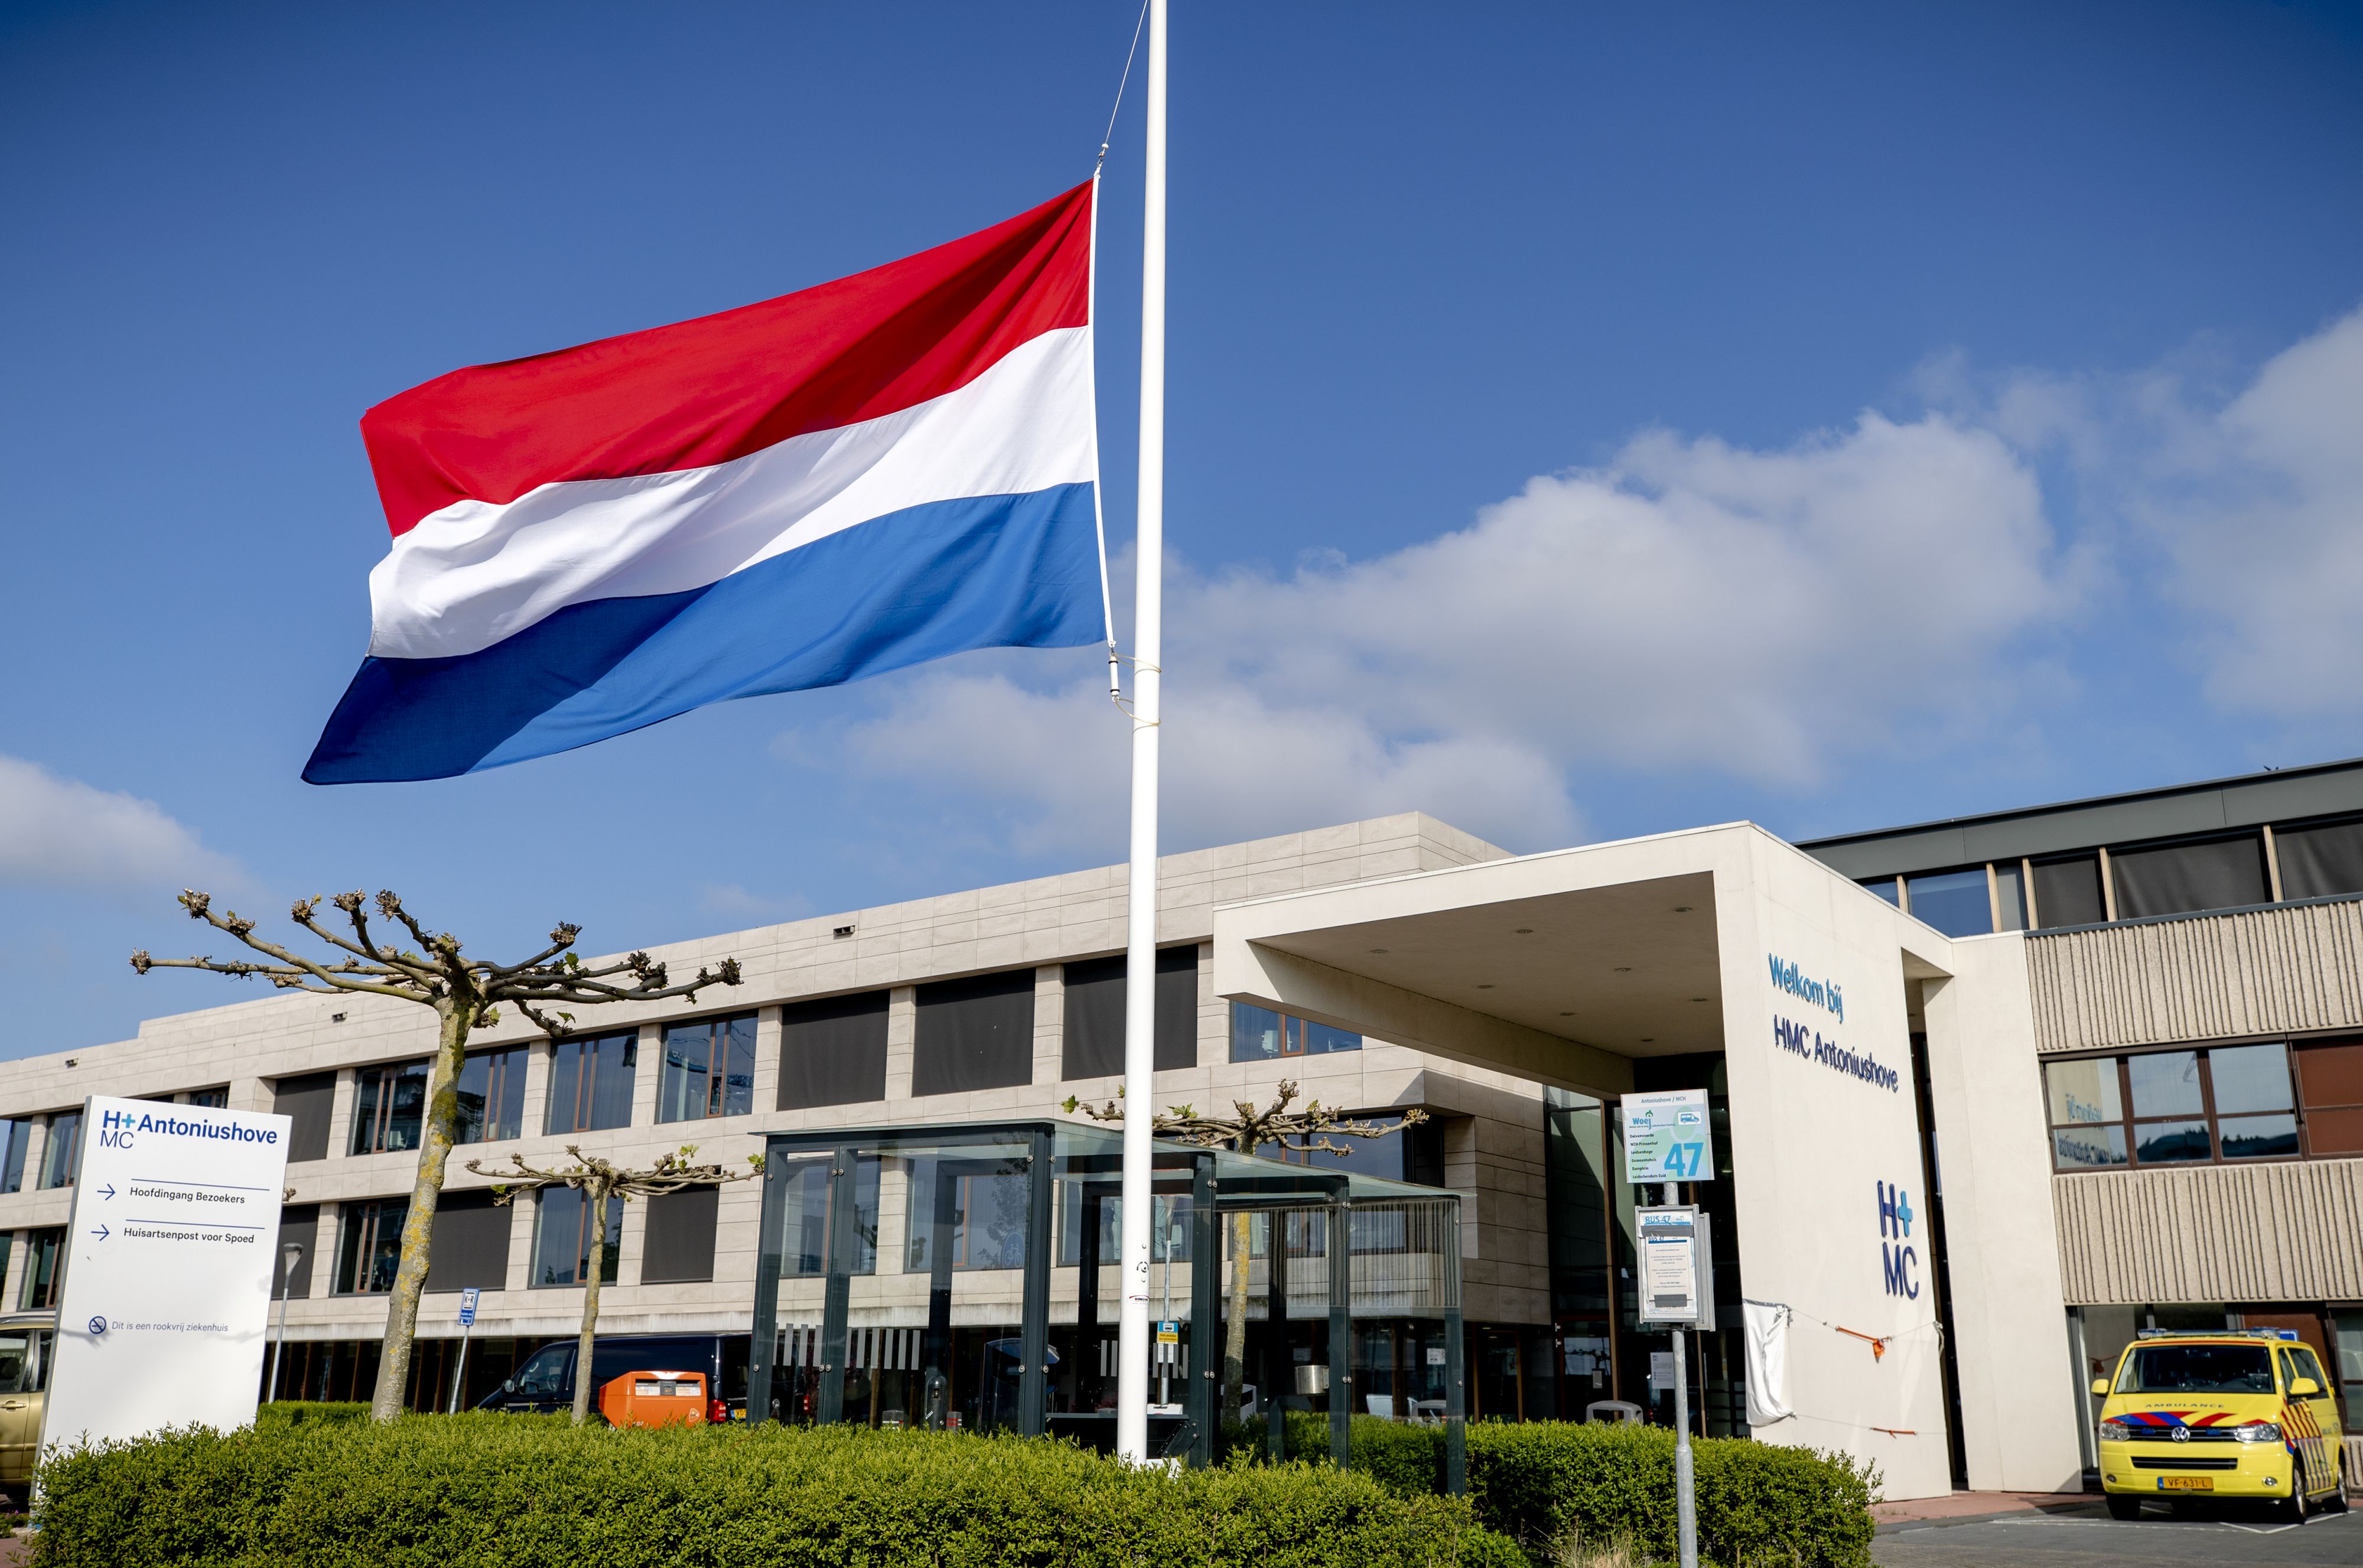 In beeld: Nederlanders hangen de hele dag de vlag halfstok